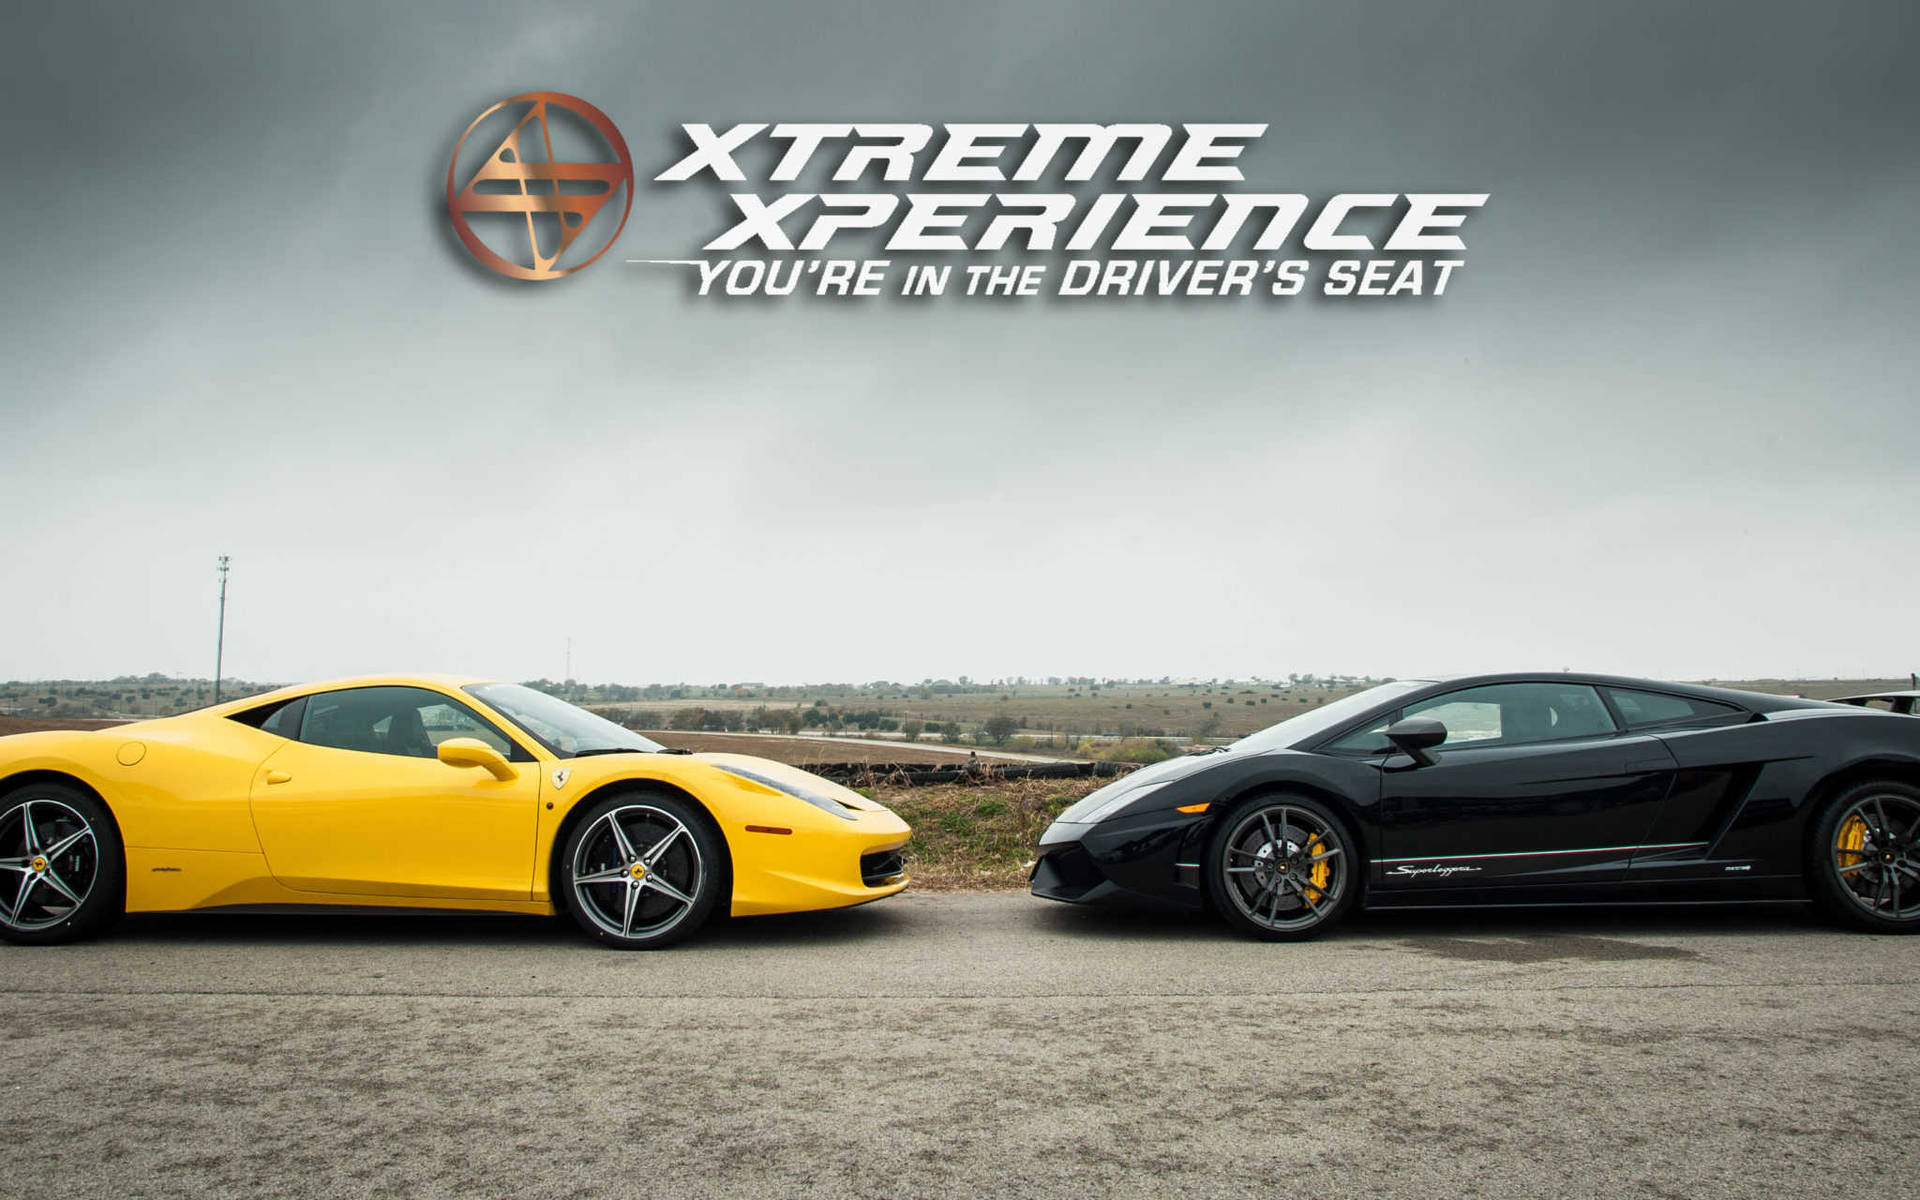 Ferrari Vs Lamborghini Xtreme Xperience Wallpaper